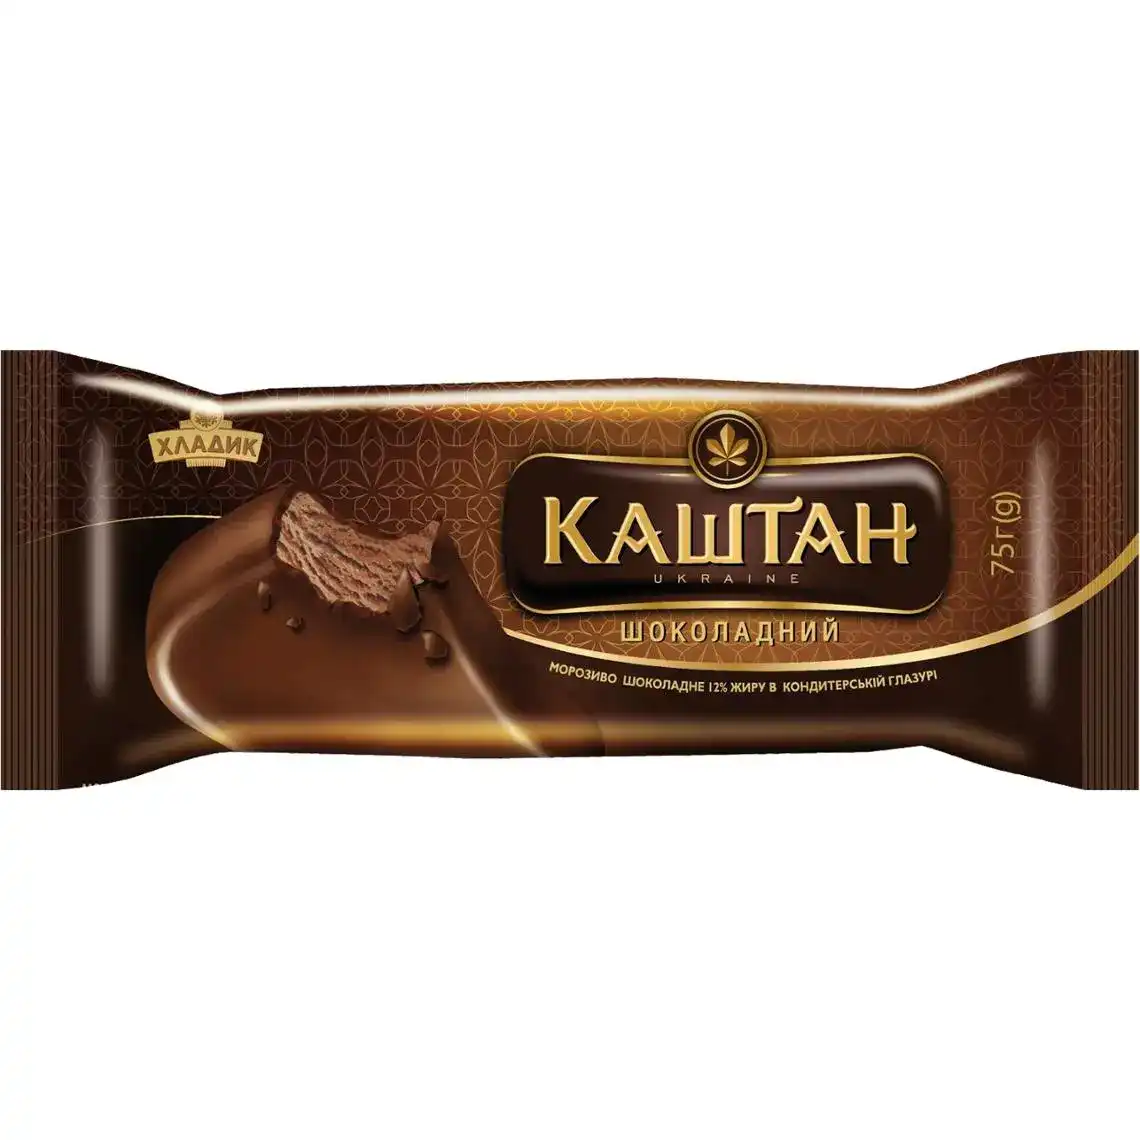 Морозиво Хладик Каштан пломбір 12% шоколадне в глазурі 75 г